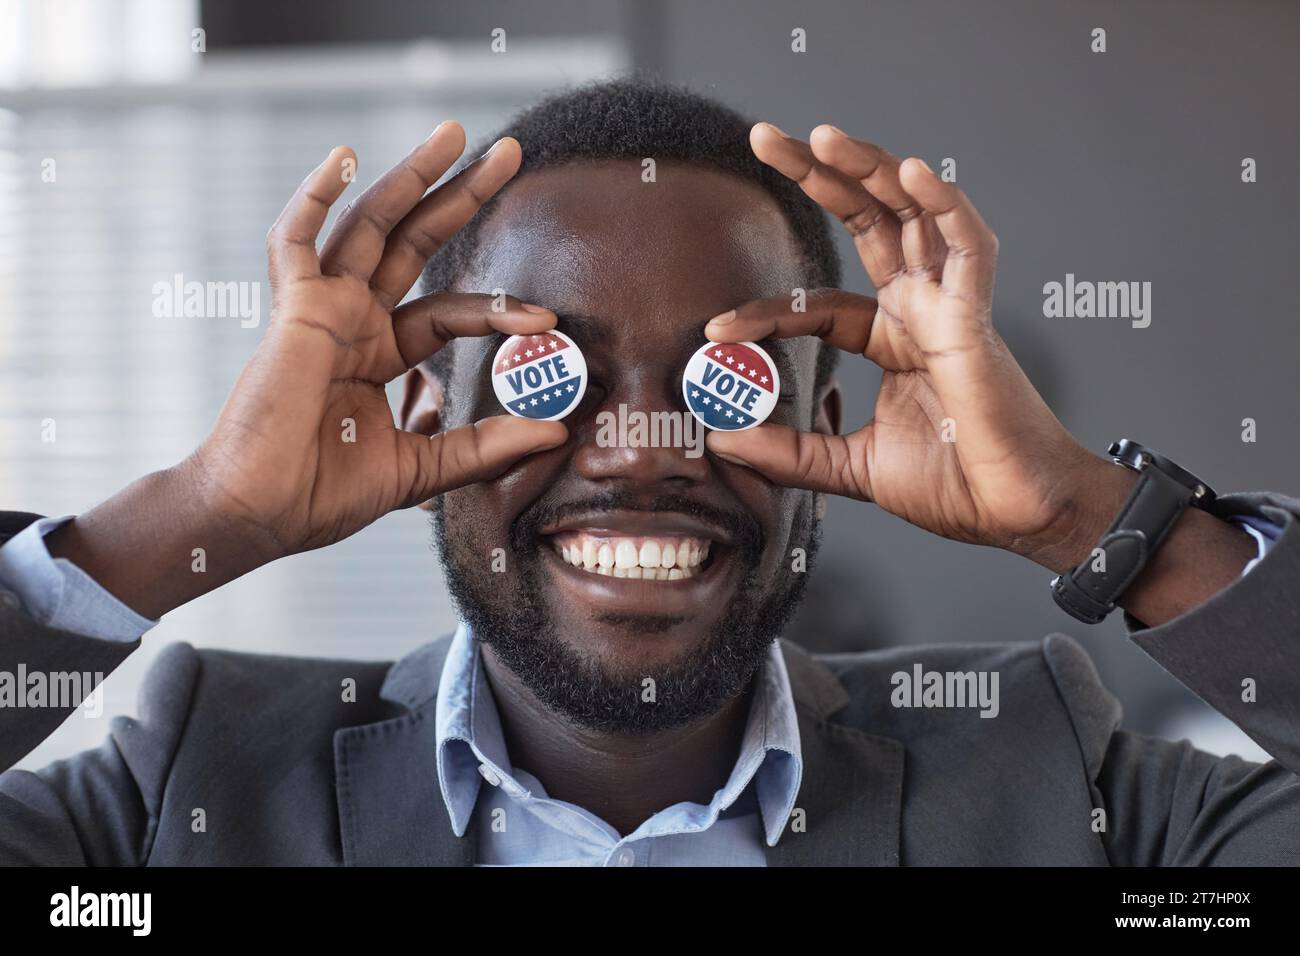 Glücklicher junger afroamerikanischer Wähler mit einem breiten, zahnlosen Lächeln, der zwei kleine runde Stimmabzeichen an den Augen hält, während er vor der Kamera steht Stockfoto